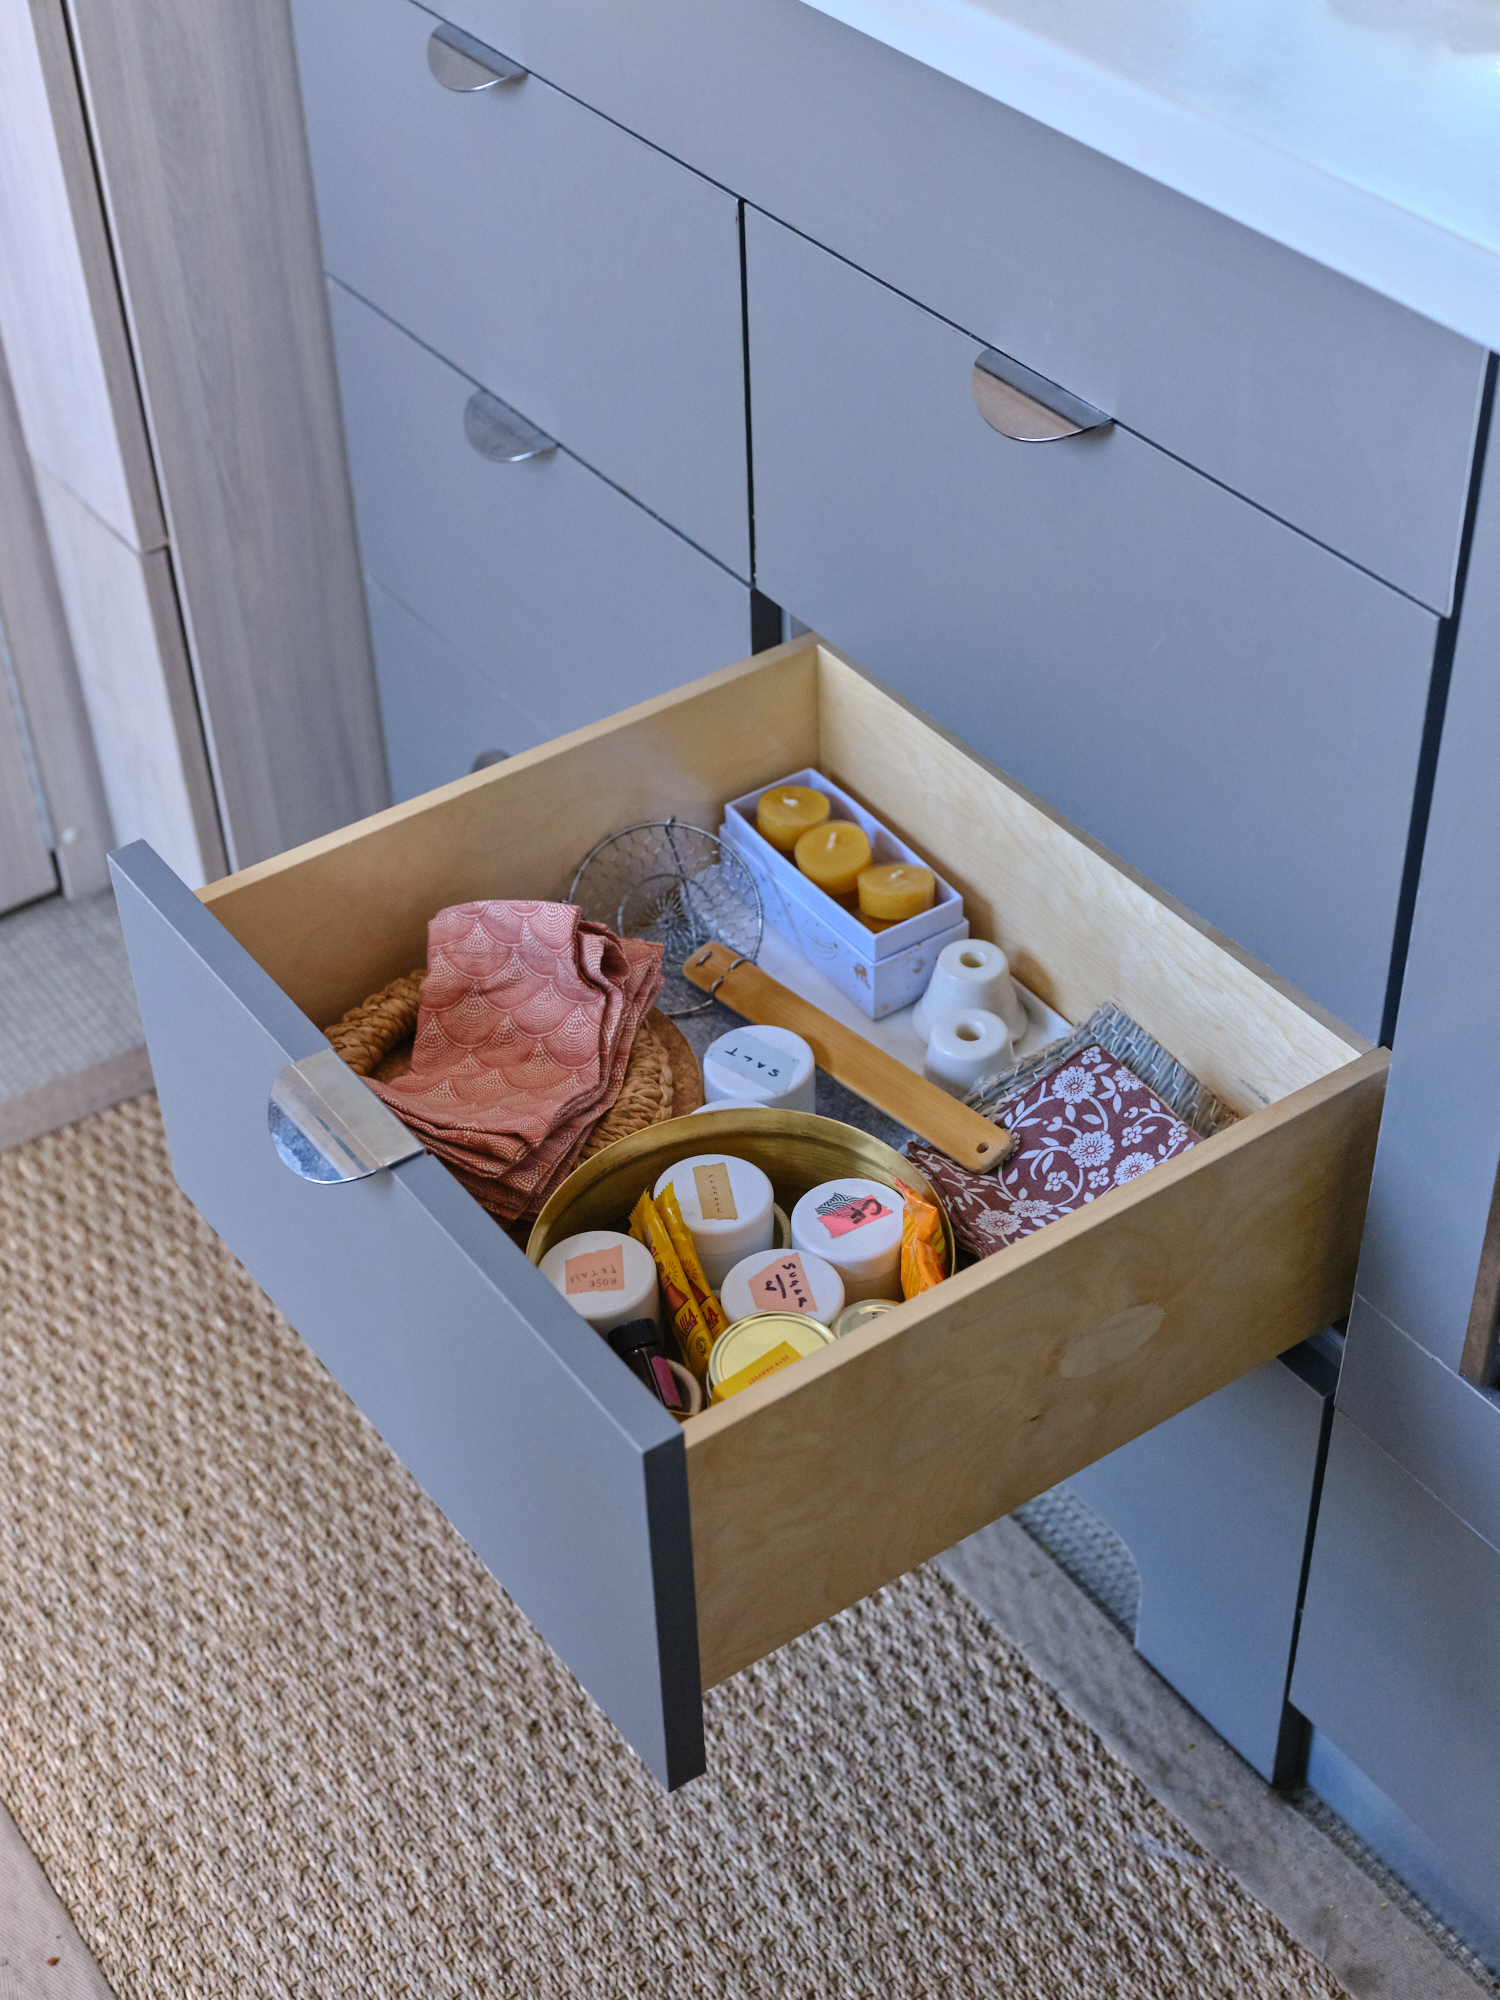 Heidi Swanson's Airstream kitchen supplies drawer.